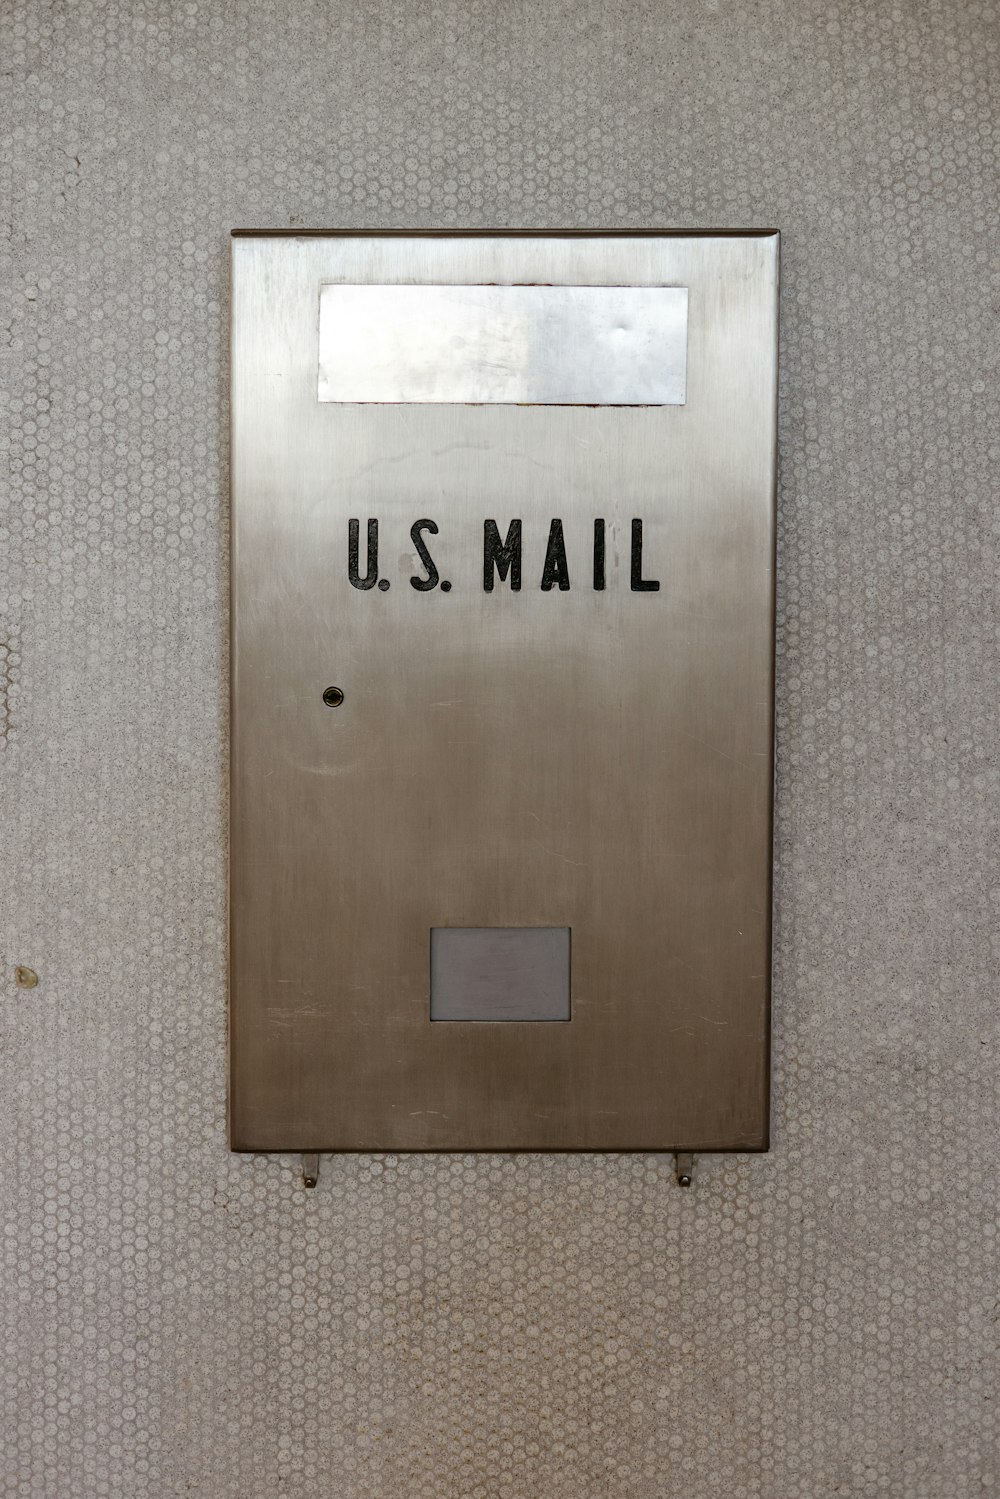 Una cassetta postale di metallo con una posta statunitense su di essa